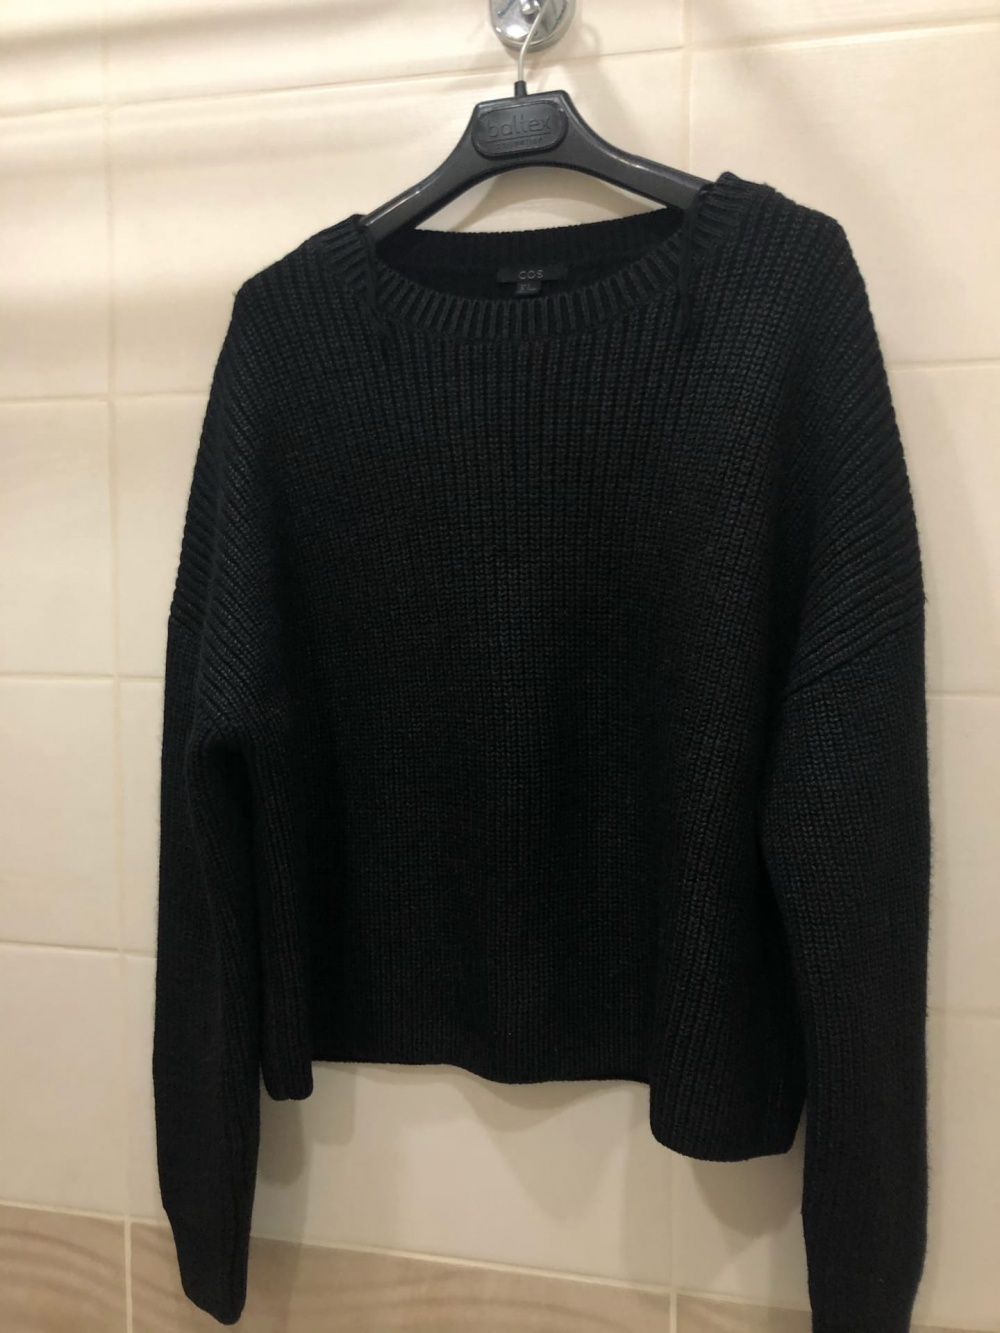 Шерстяной свитер COS.Размер M-L.